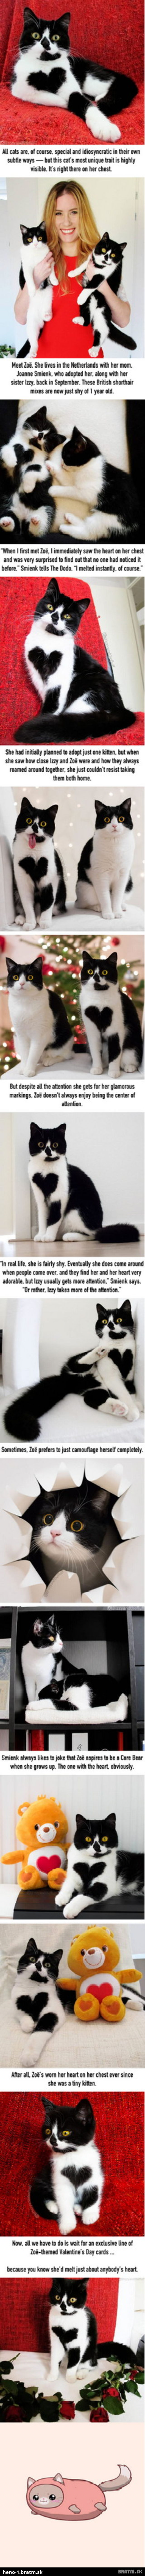 Spoznajte najkrajšiu mačičku internetu!